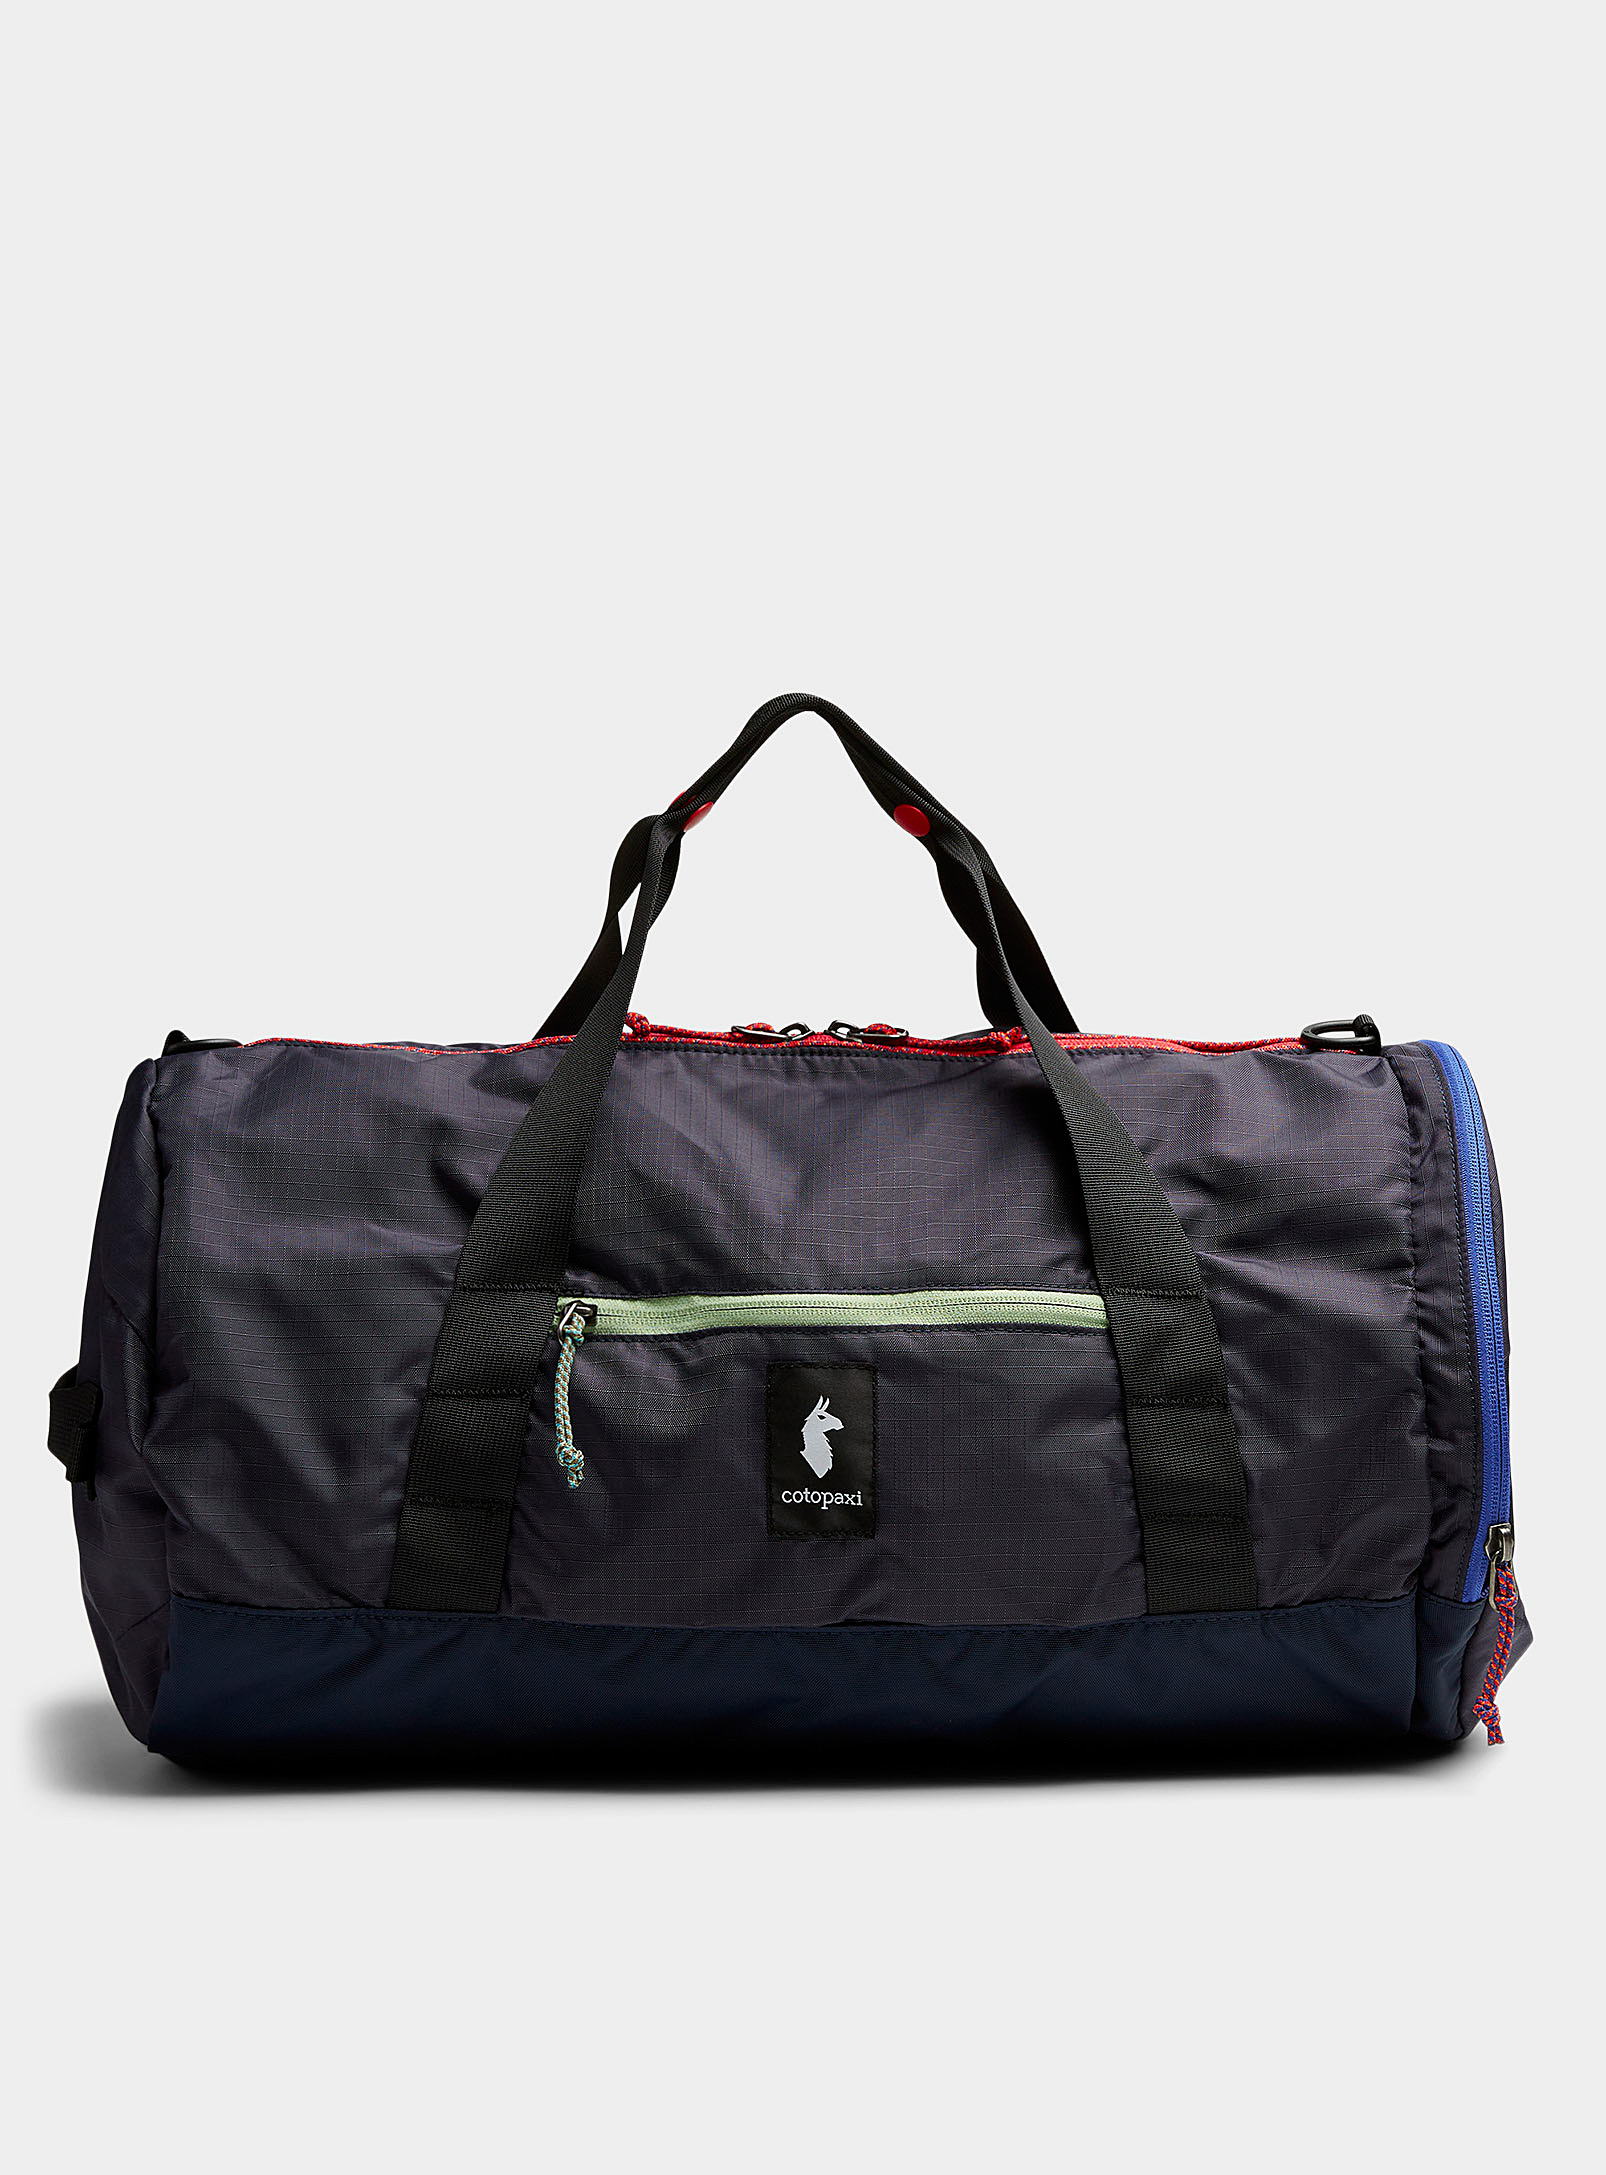 Cotopaxi - Men's Ligera 32 L duffel bag